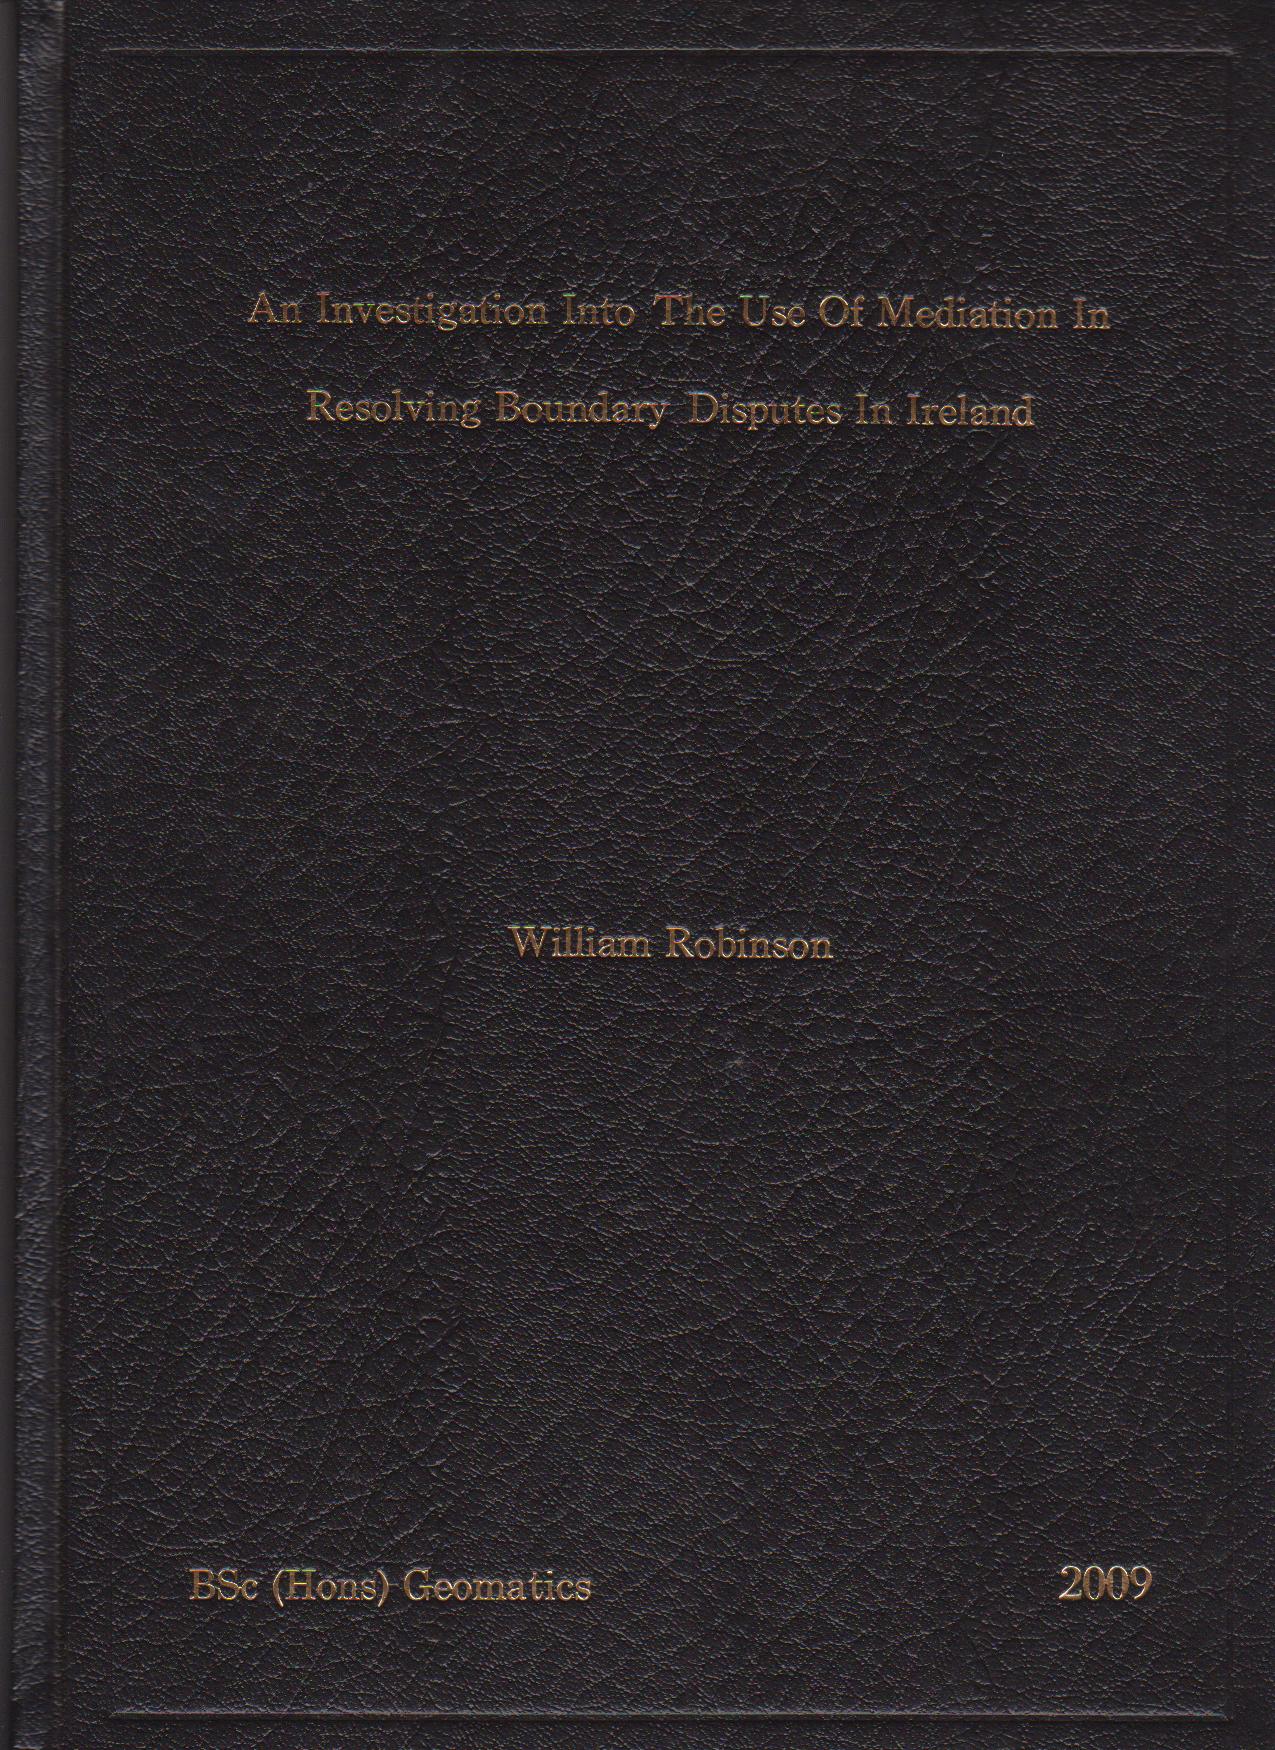 Dissertation on mediation